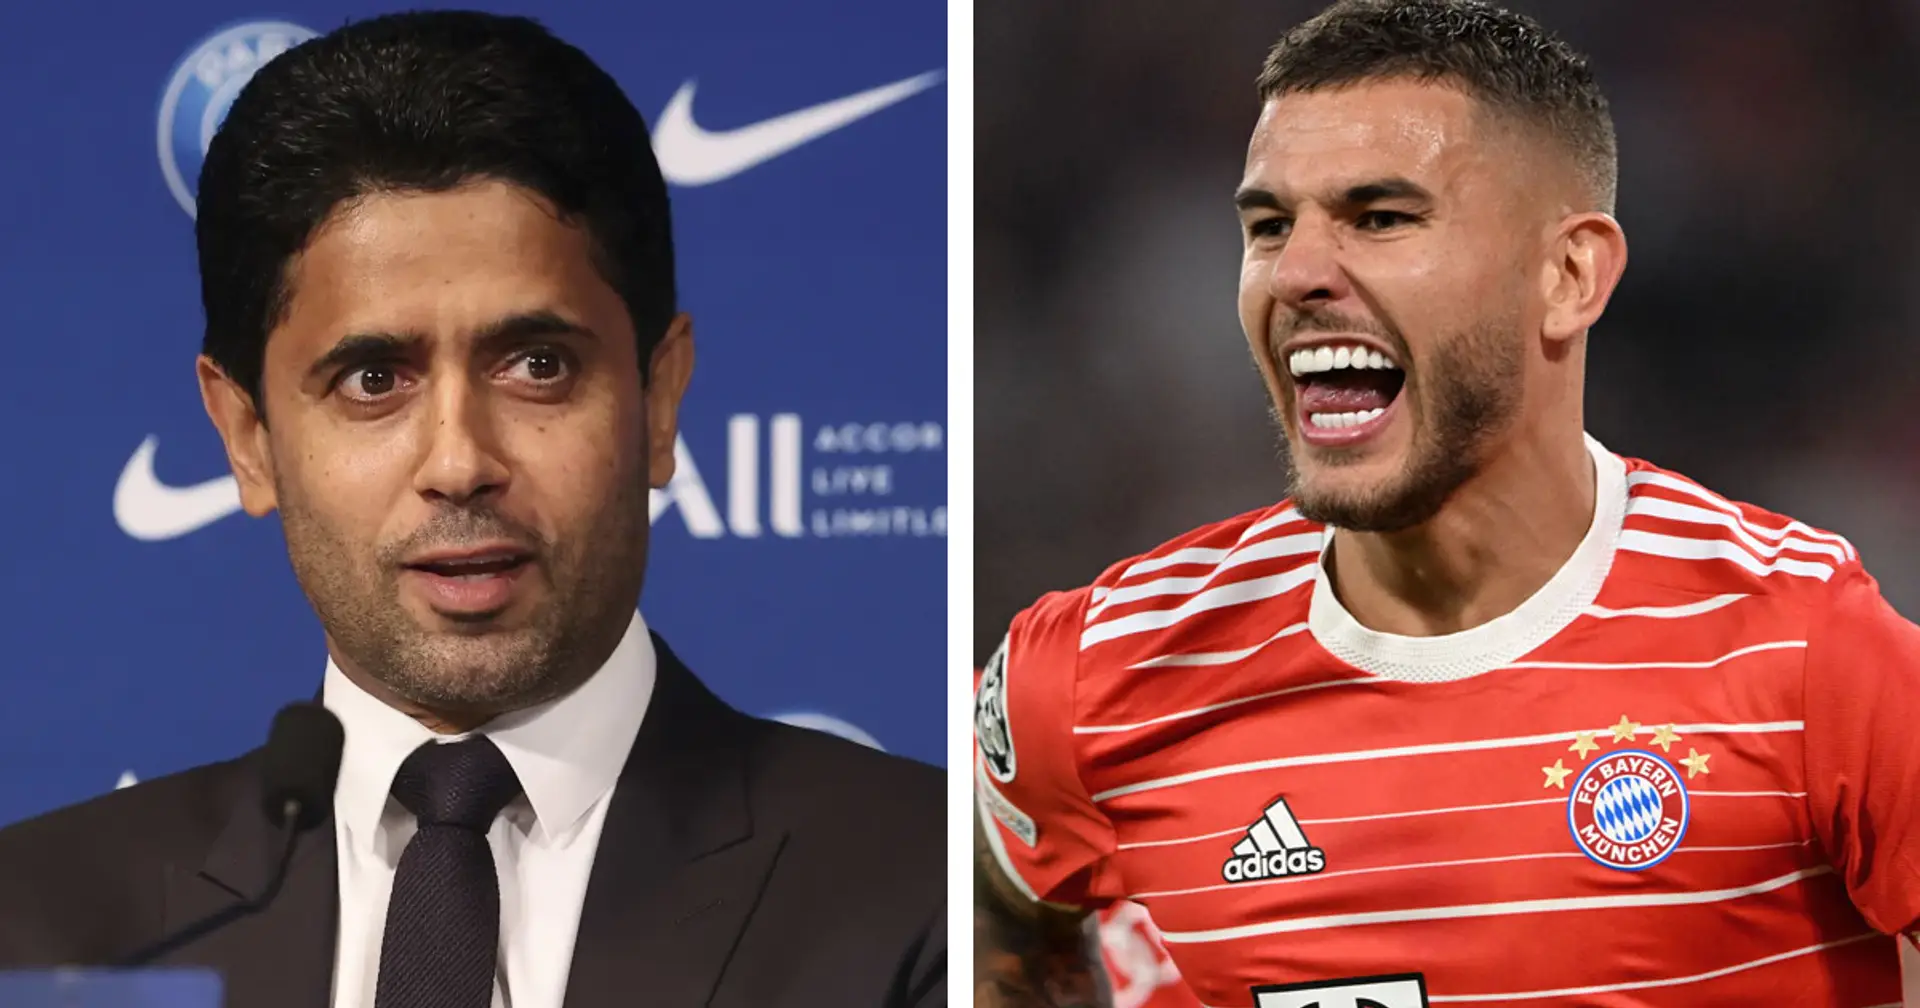 PSG ist an Lucas Hernandez interessiert: Der Klub sucht nach einem linksfüßigen Innenverteidiger